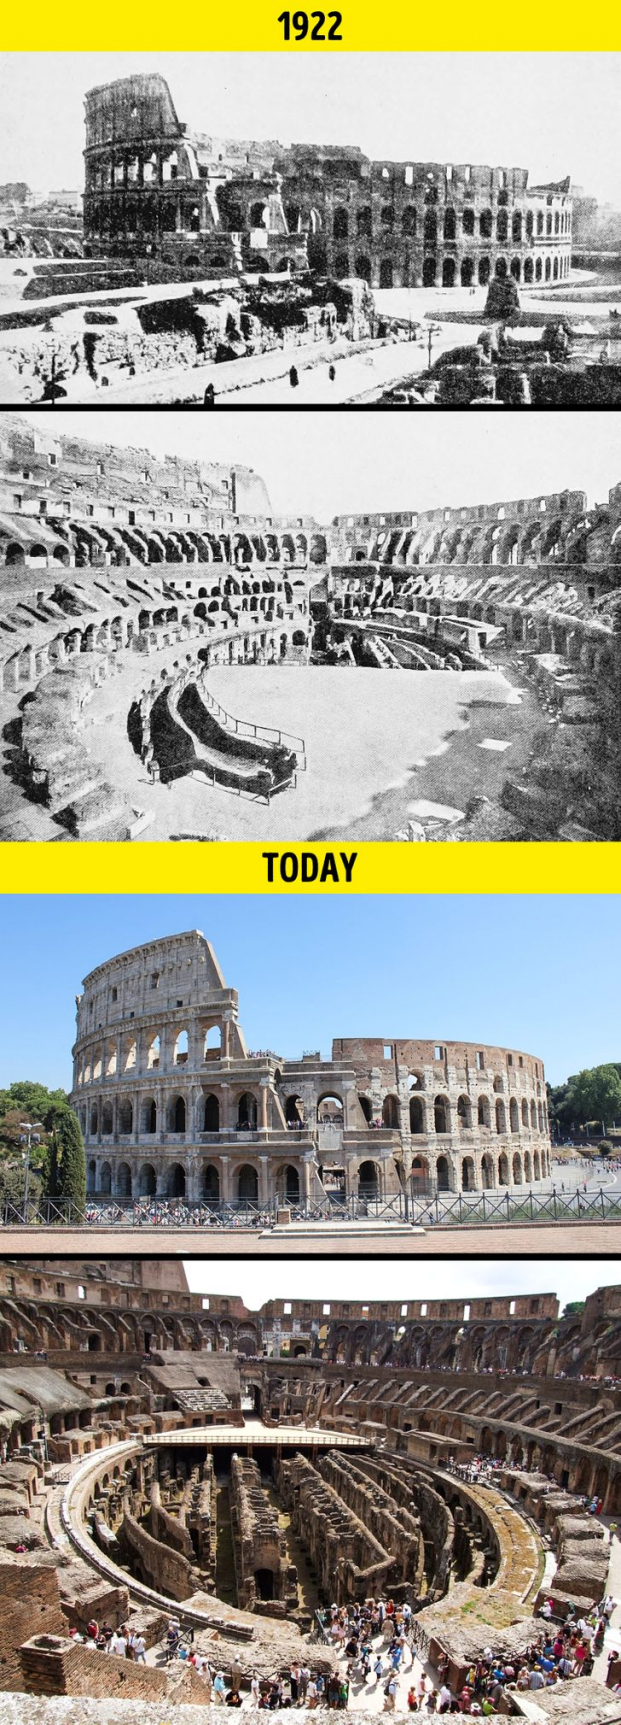   Đấu trường La Mã (Colosseum) ở thành phố Rome, Italy  